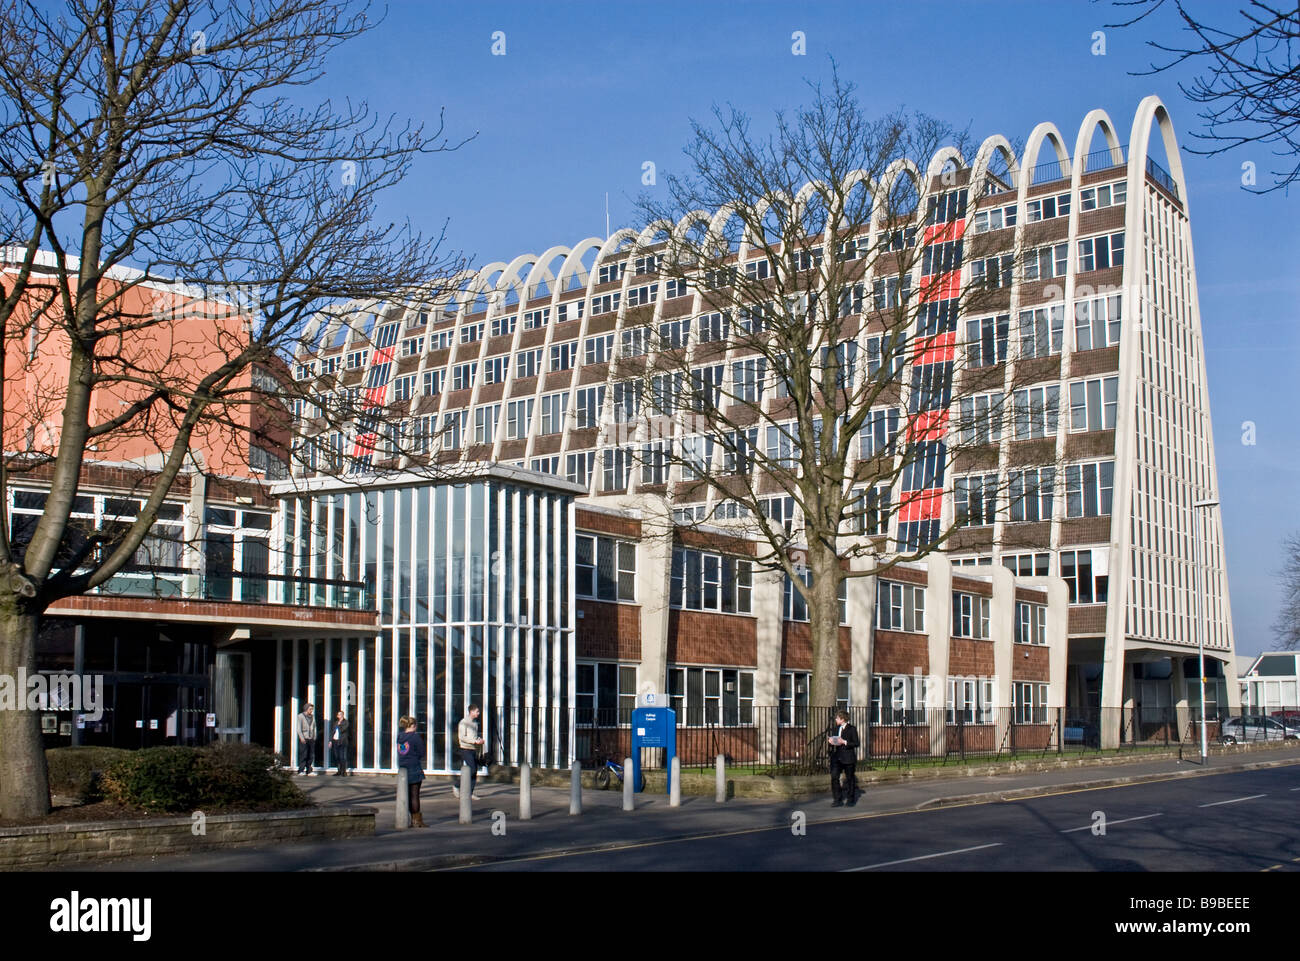 L'Université métropolitaine de Manchester, Hollings Campus, le 'Toast-Rack', bâtiment classé. Manchester, UK Banque D'Images